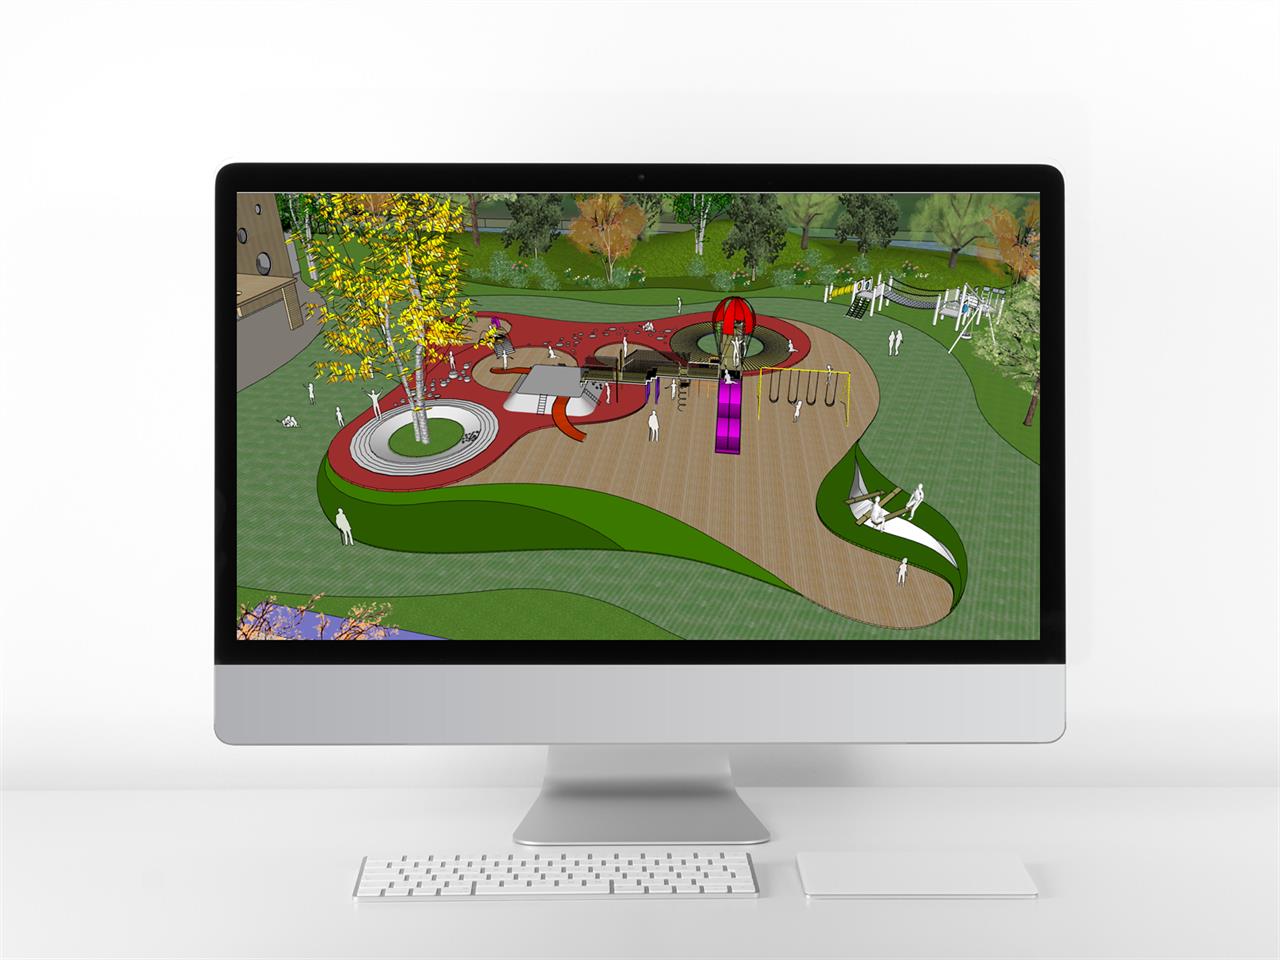 단출한 공원광장 환경 Sketchup 배경 만들기 미리보기